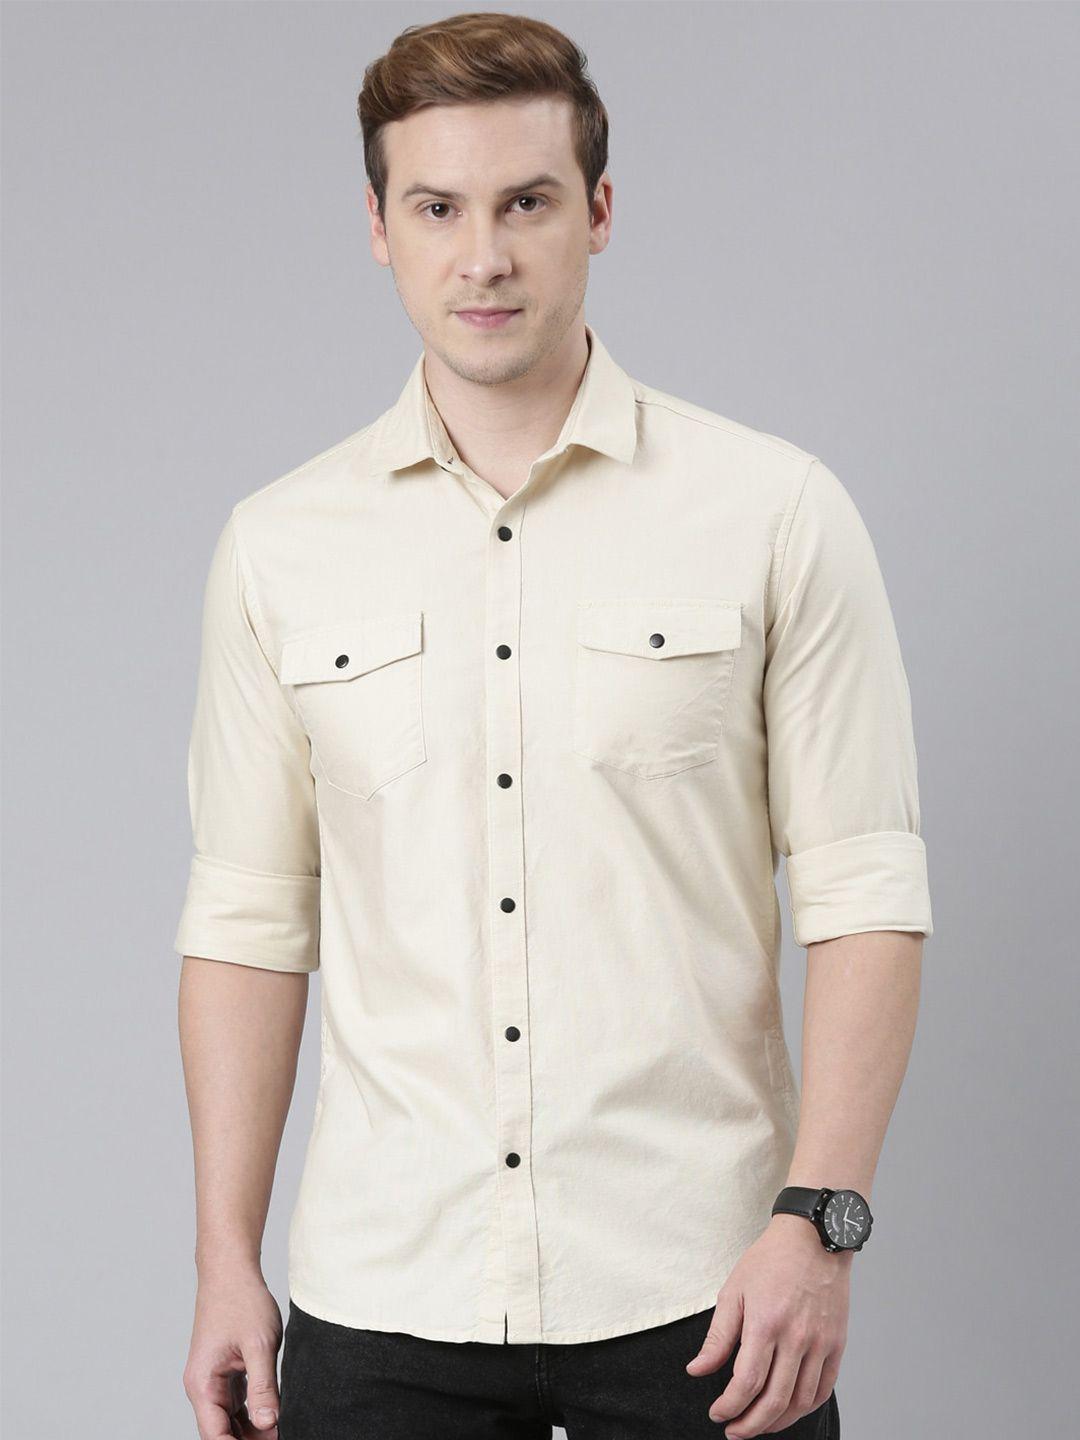 bushirt-men-cotton-classic-casual-shirt